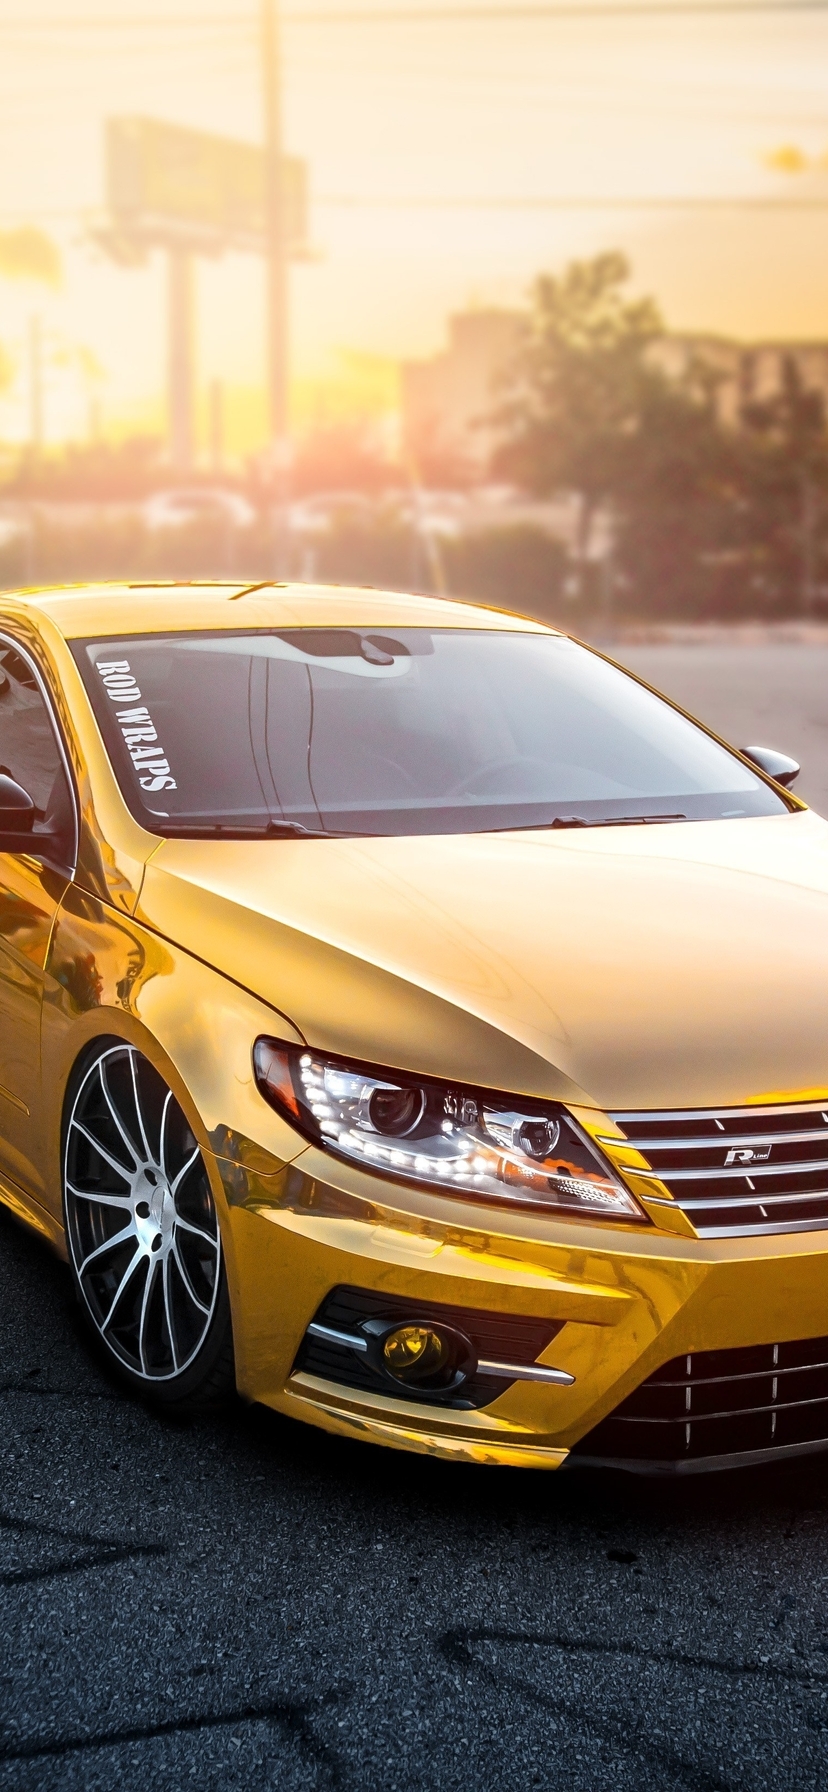 Картинка: Volkswagen, Gold, закат, отражение, асфальт